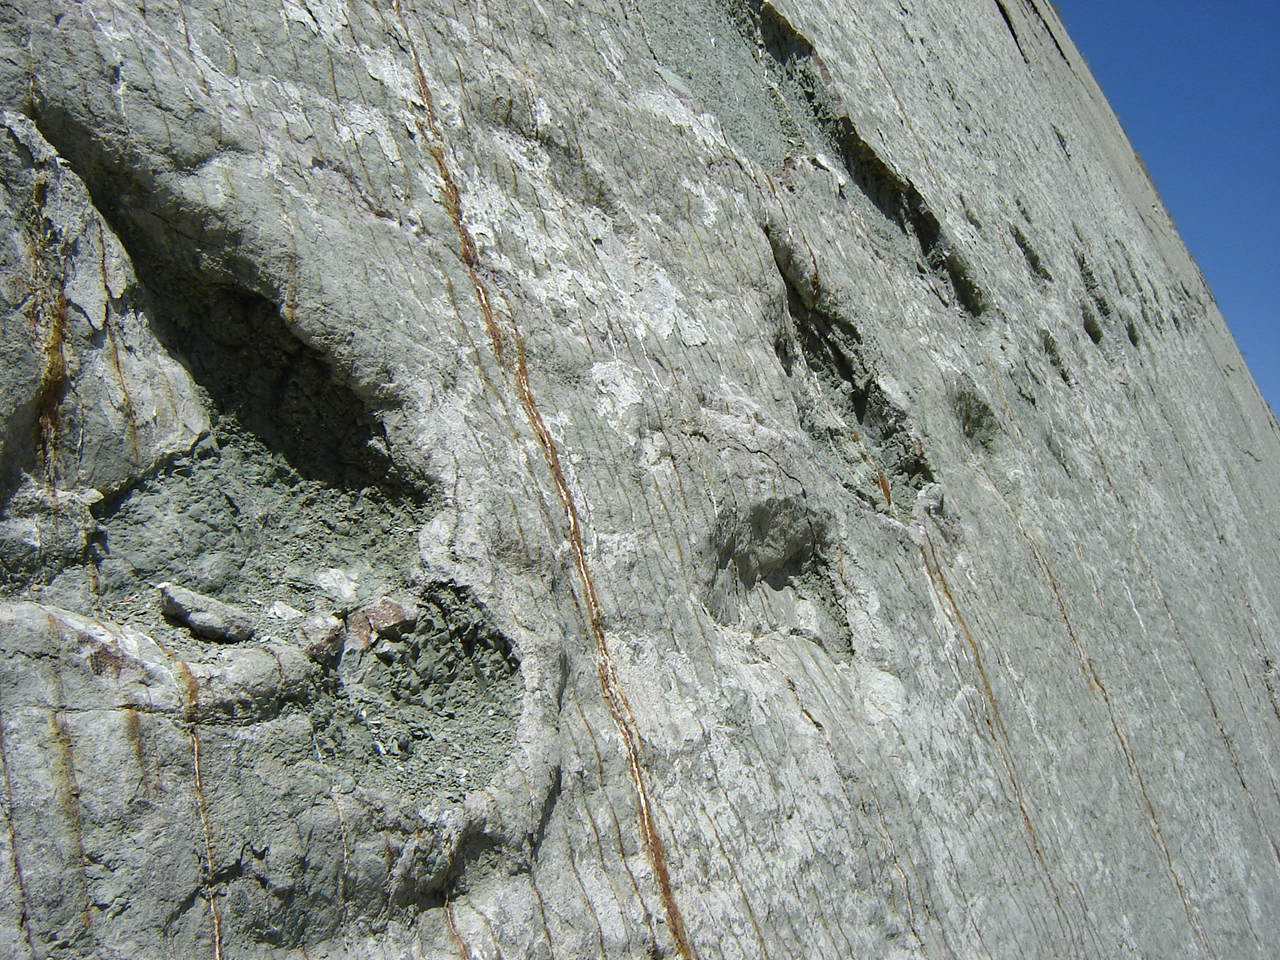 दीवार पर पैरों के निशान: क्या बोलीविया में डायनासोर वास्तव में चट्टानों पर चढ़ रहे थे? 2